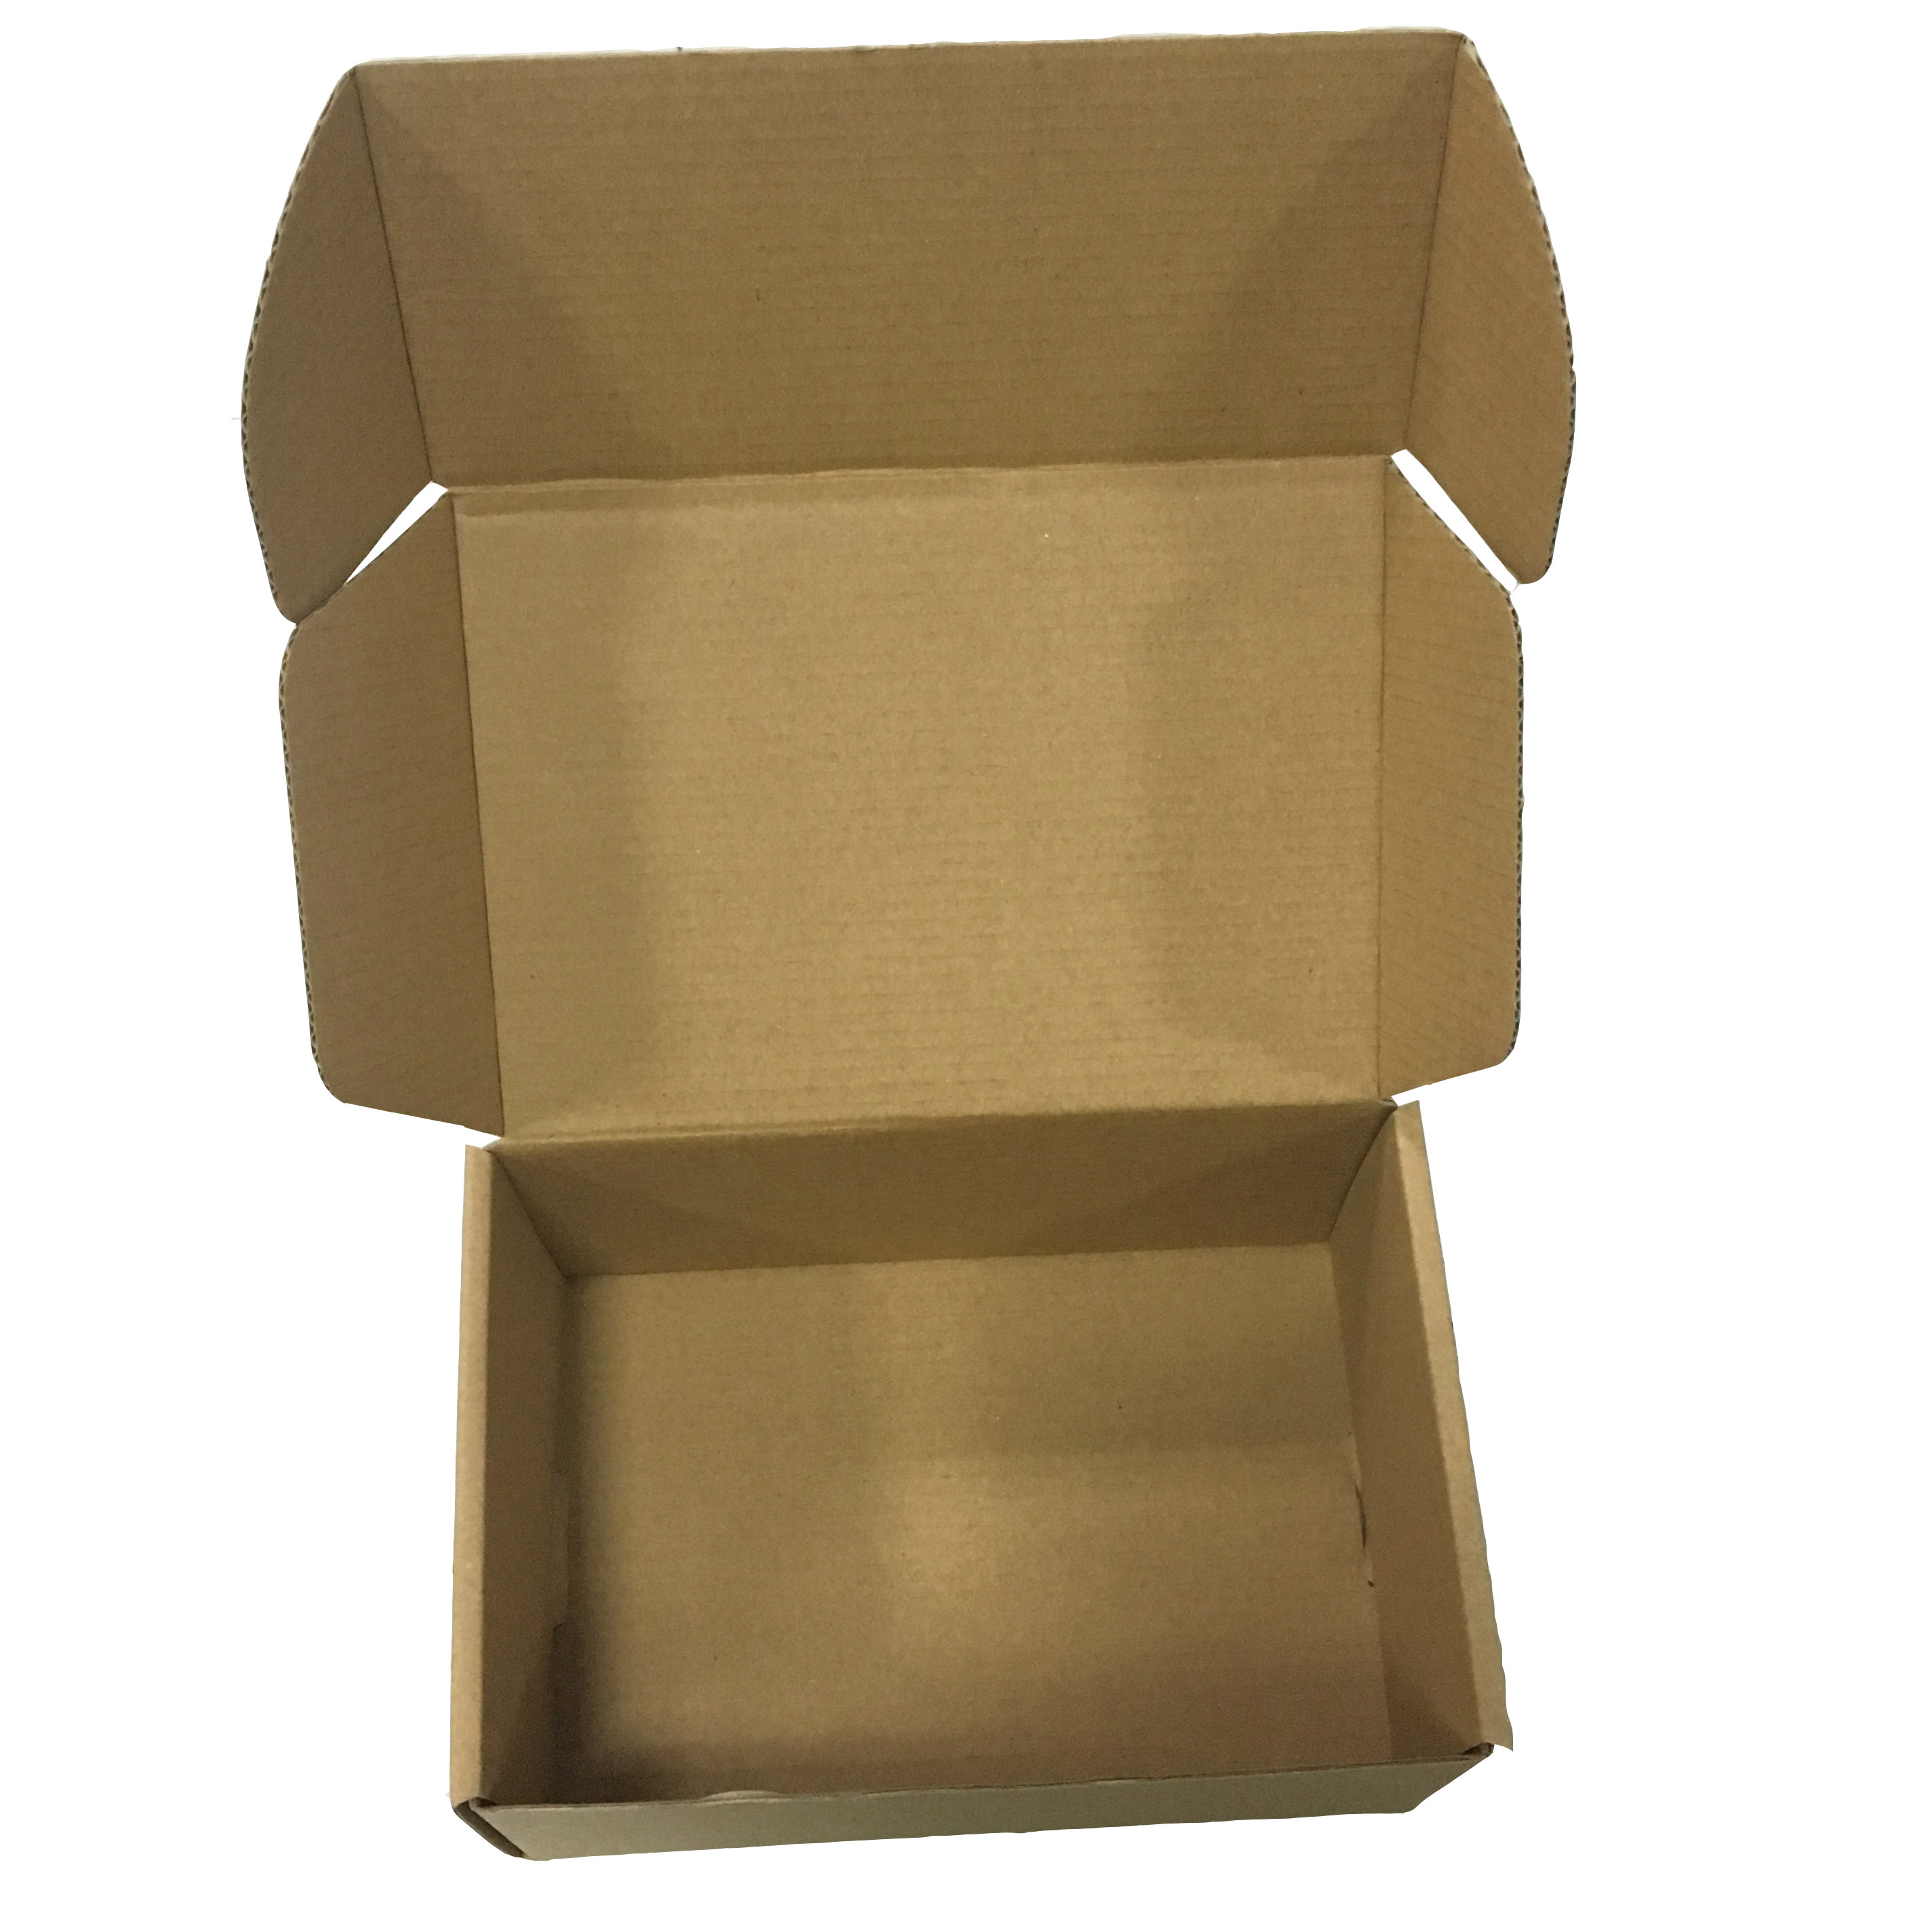 Caja para Envíos con Manija de Plástico